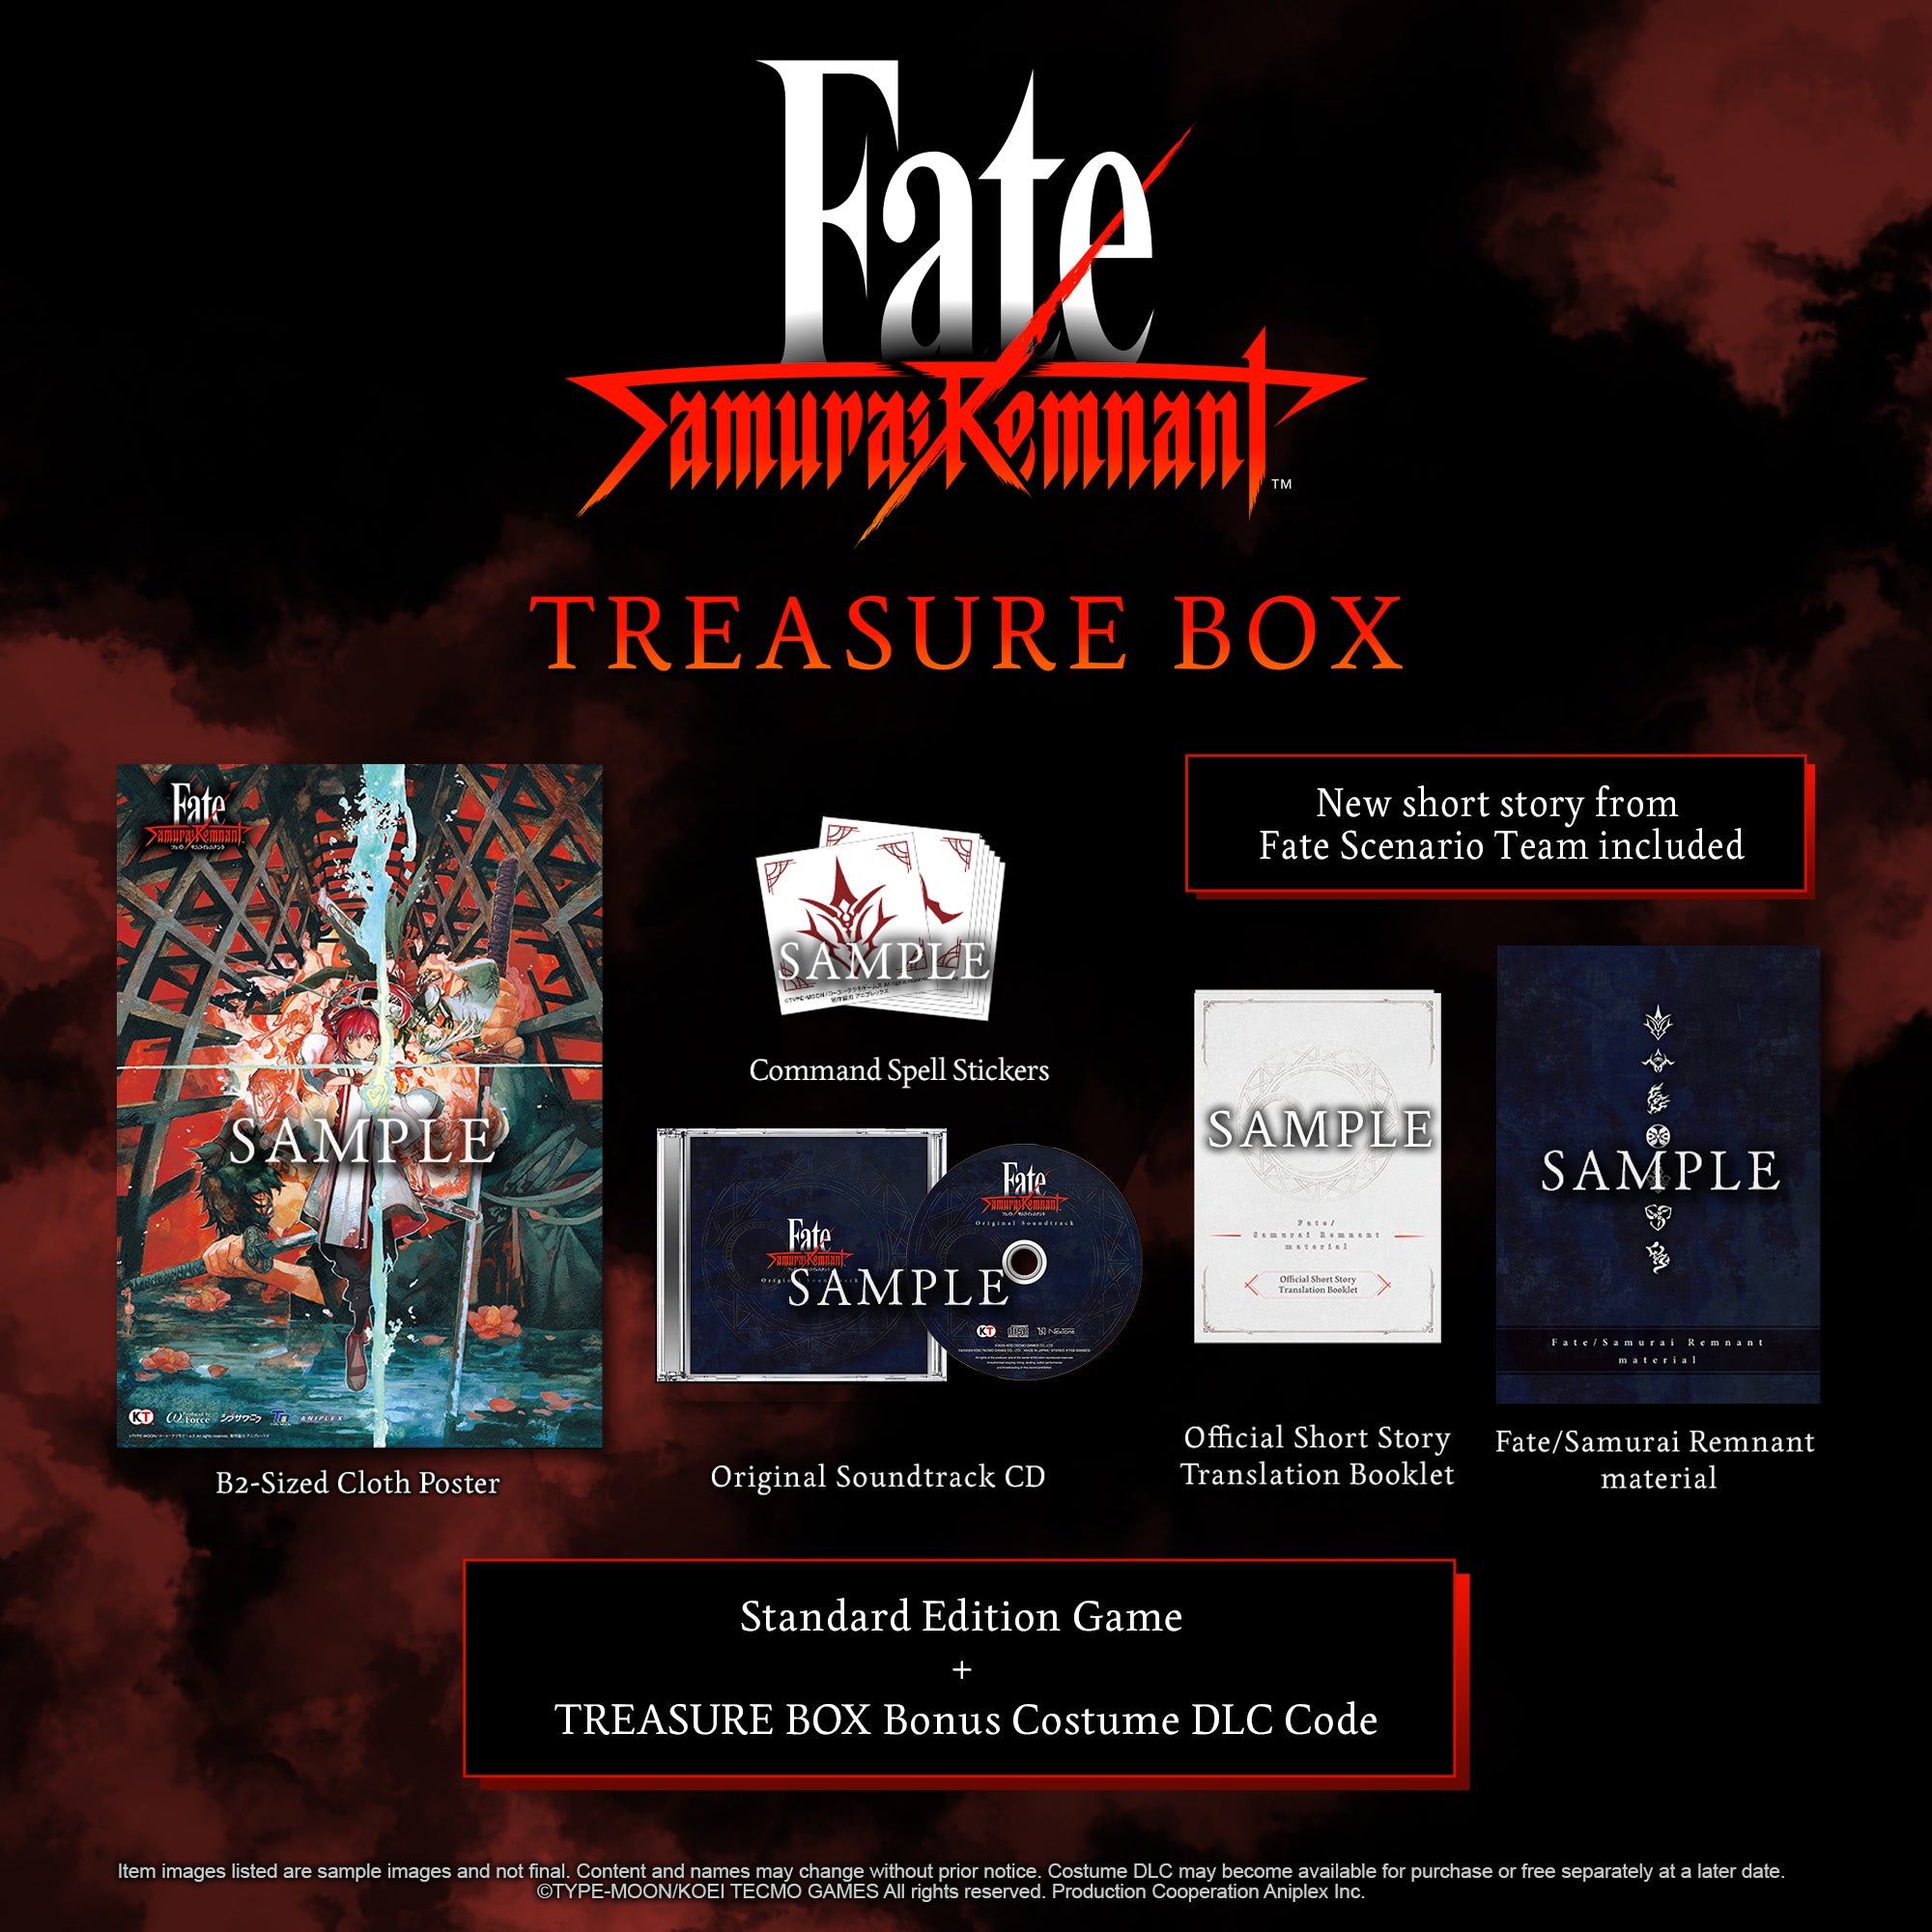 Fate/Samurai Remnant material 未開封 マテリアルサムライレムナント 